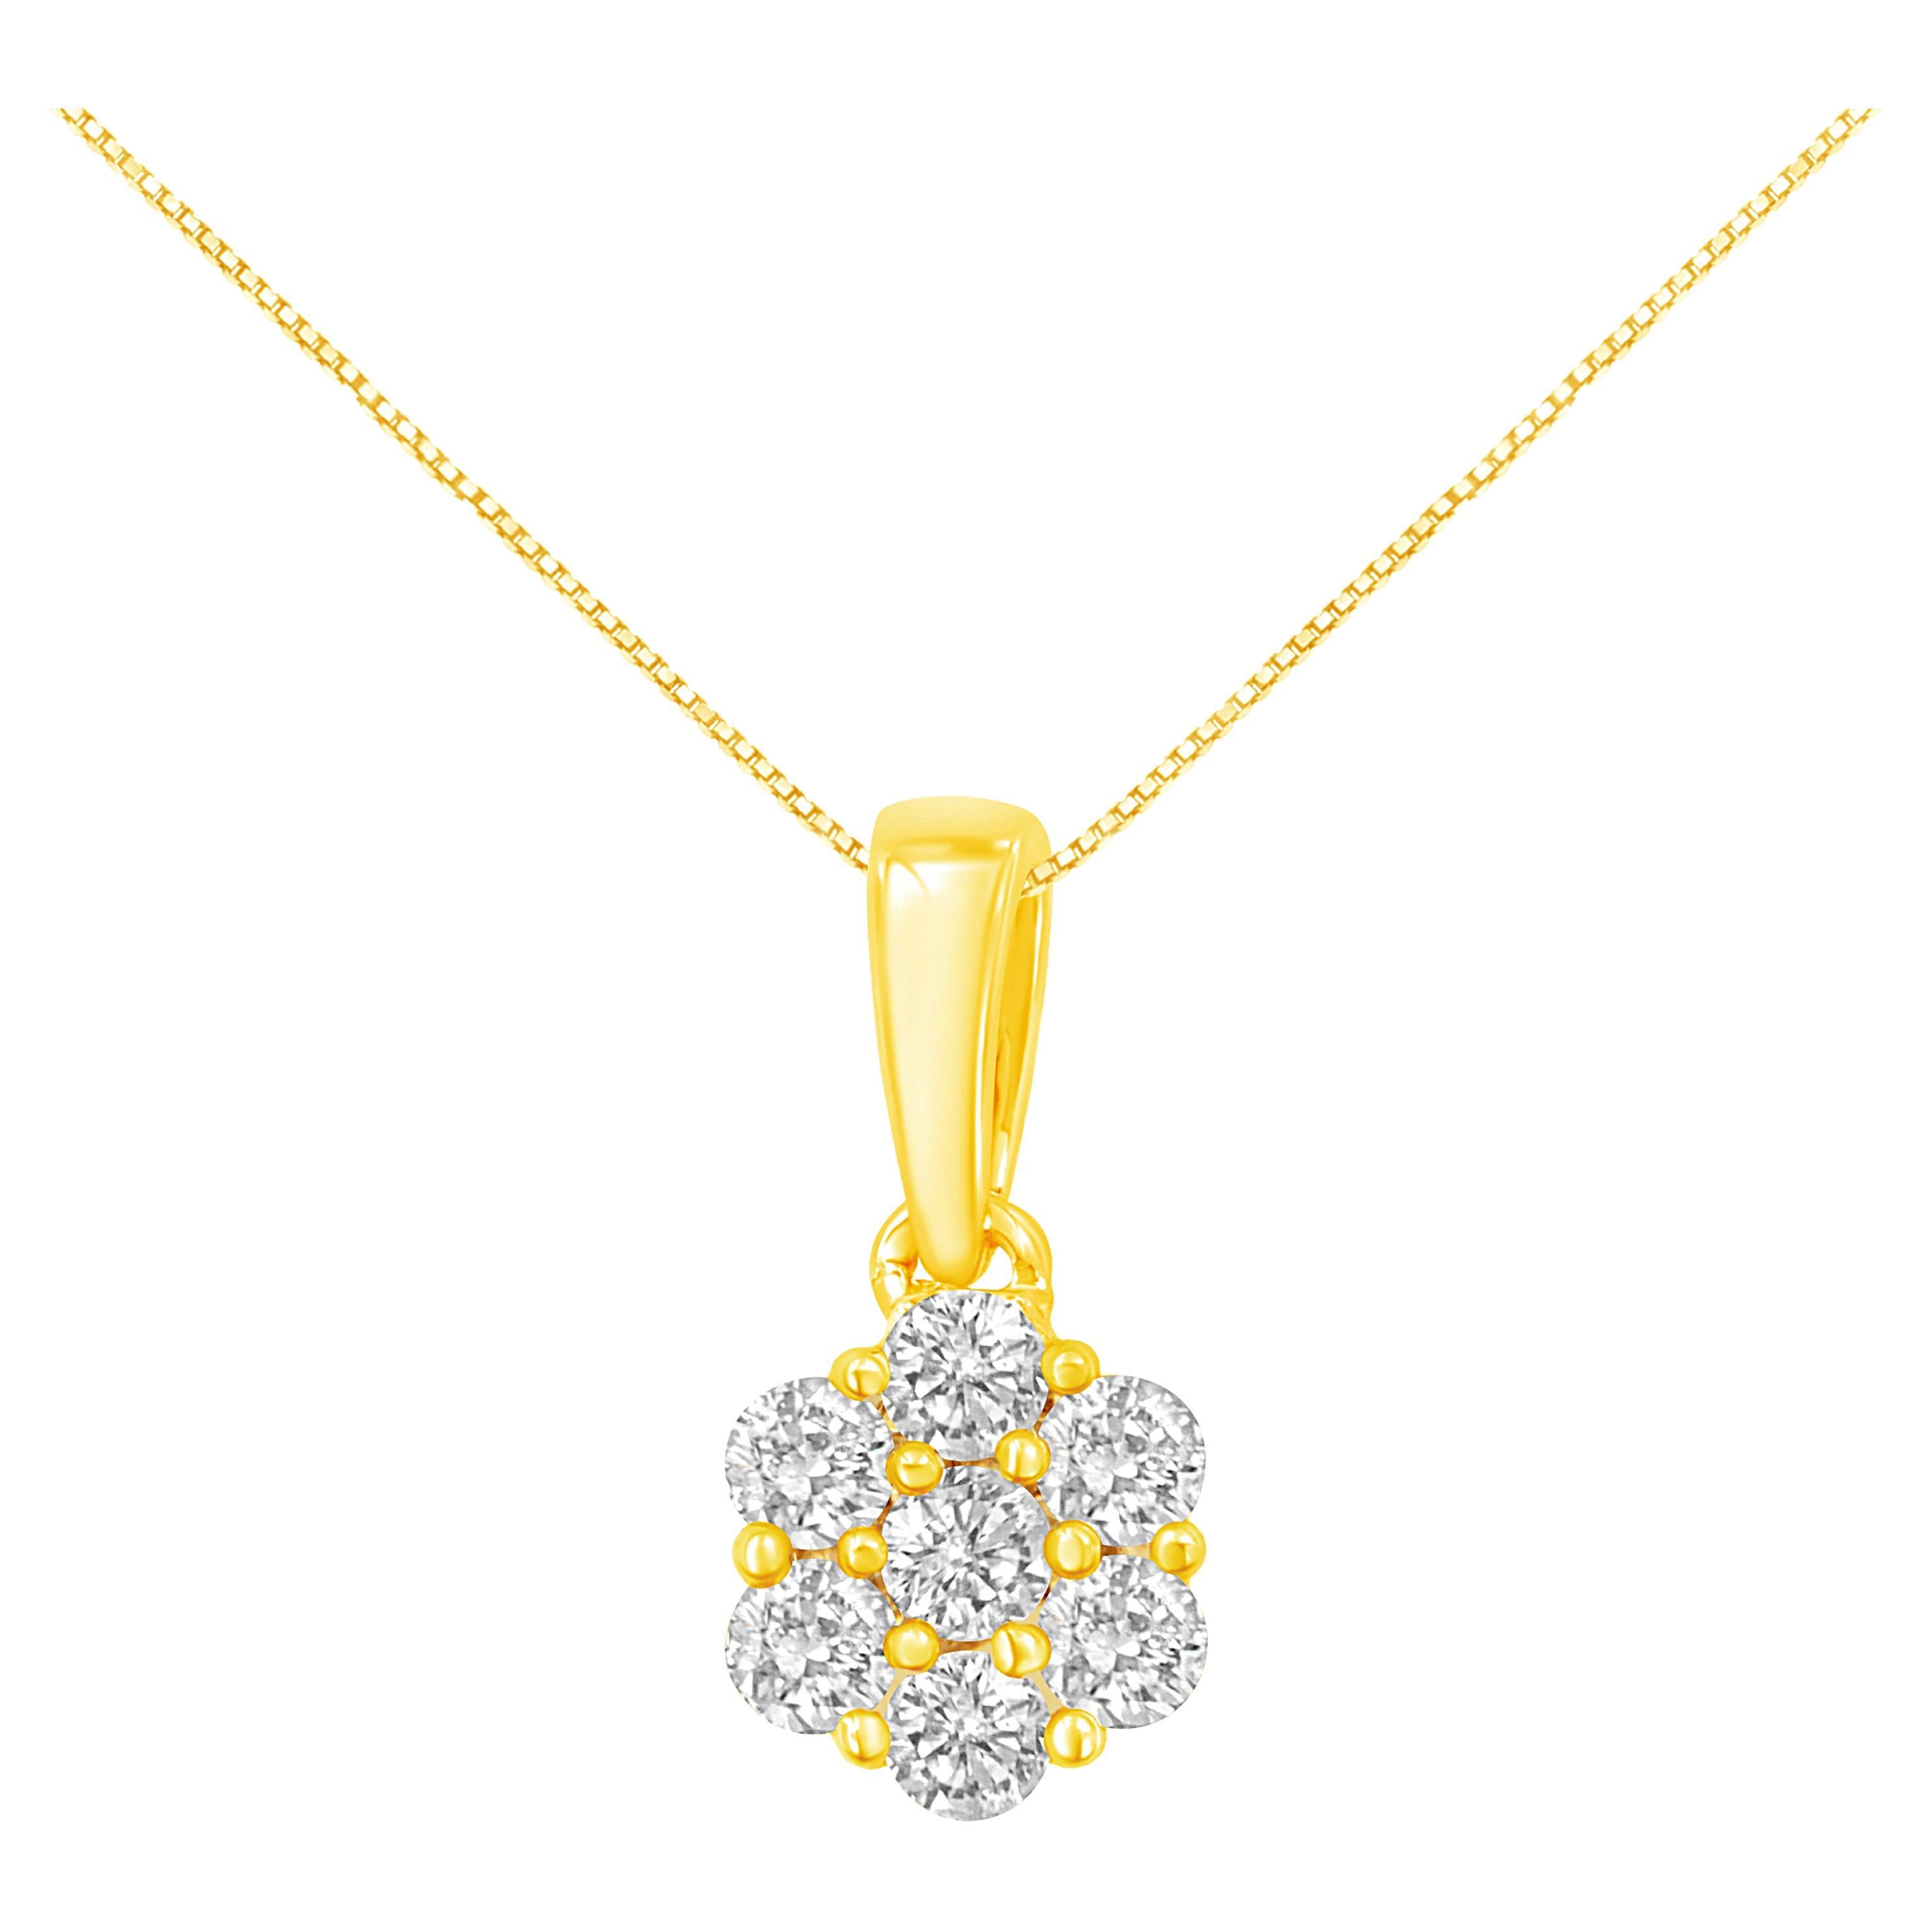 Collier pendentif fleur en or jaune 14 carats avec 7 pierres et diamants taille ronde de 1/2 carat